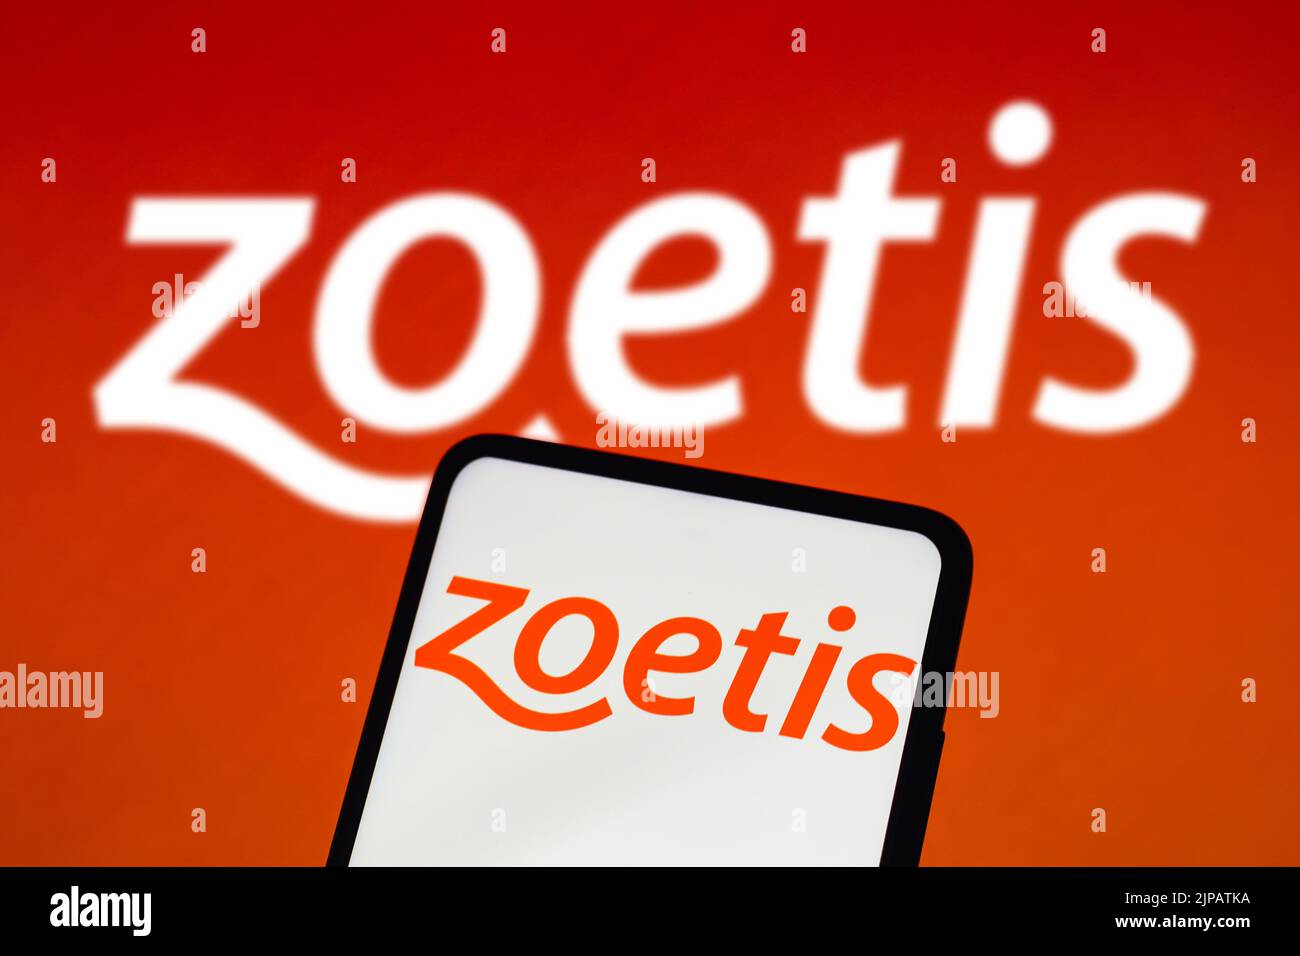 In dieser Abbildung wird das Zoetis-Logo auf einem Smartphone-Bildschirm und im Hintergrund angezeigt. Stockfoto